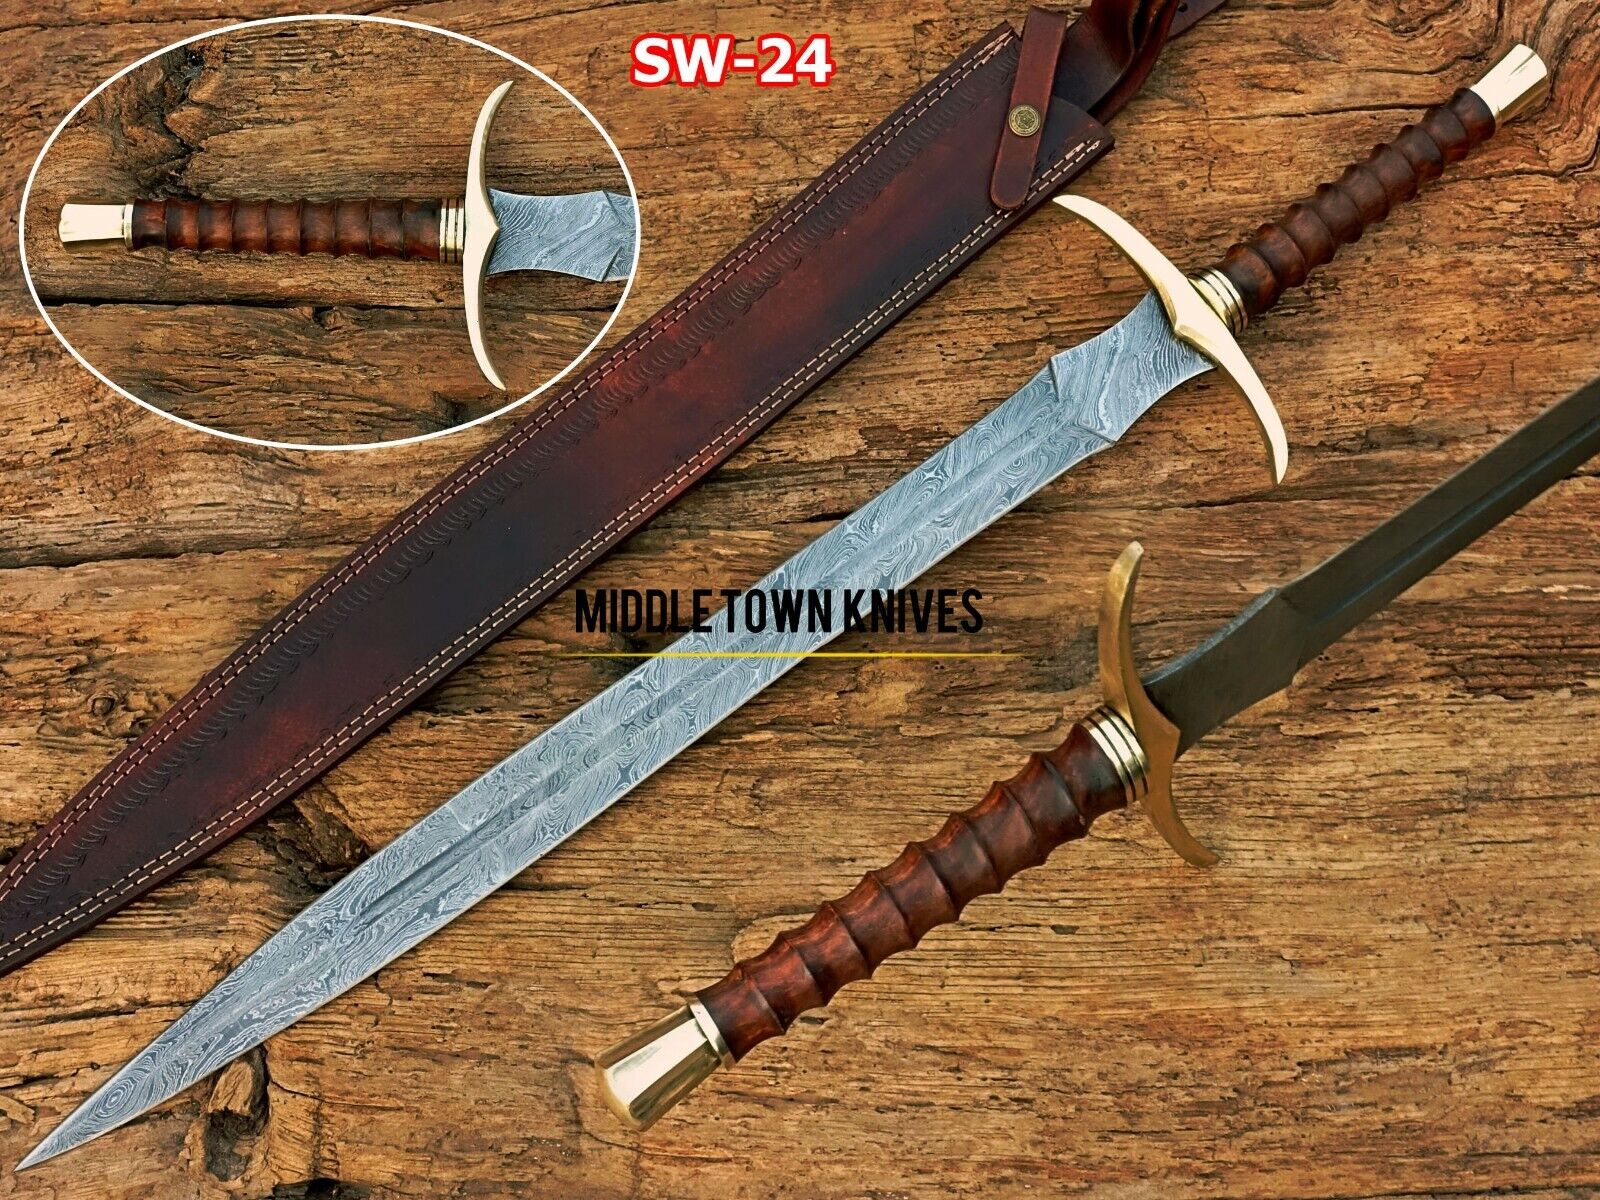 Handmade Damascus Steel Medieval Sword/Viking Longsword With Rose Wood Handle.